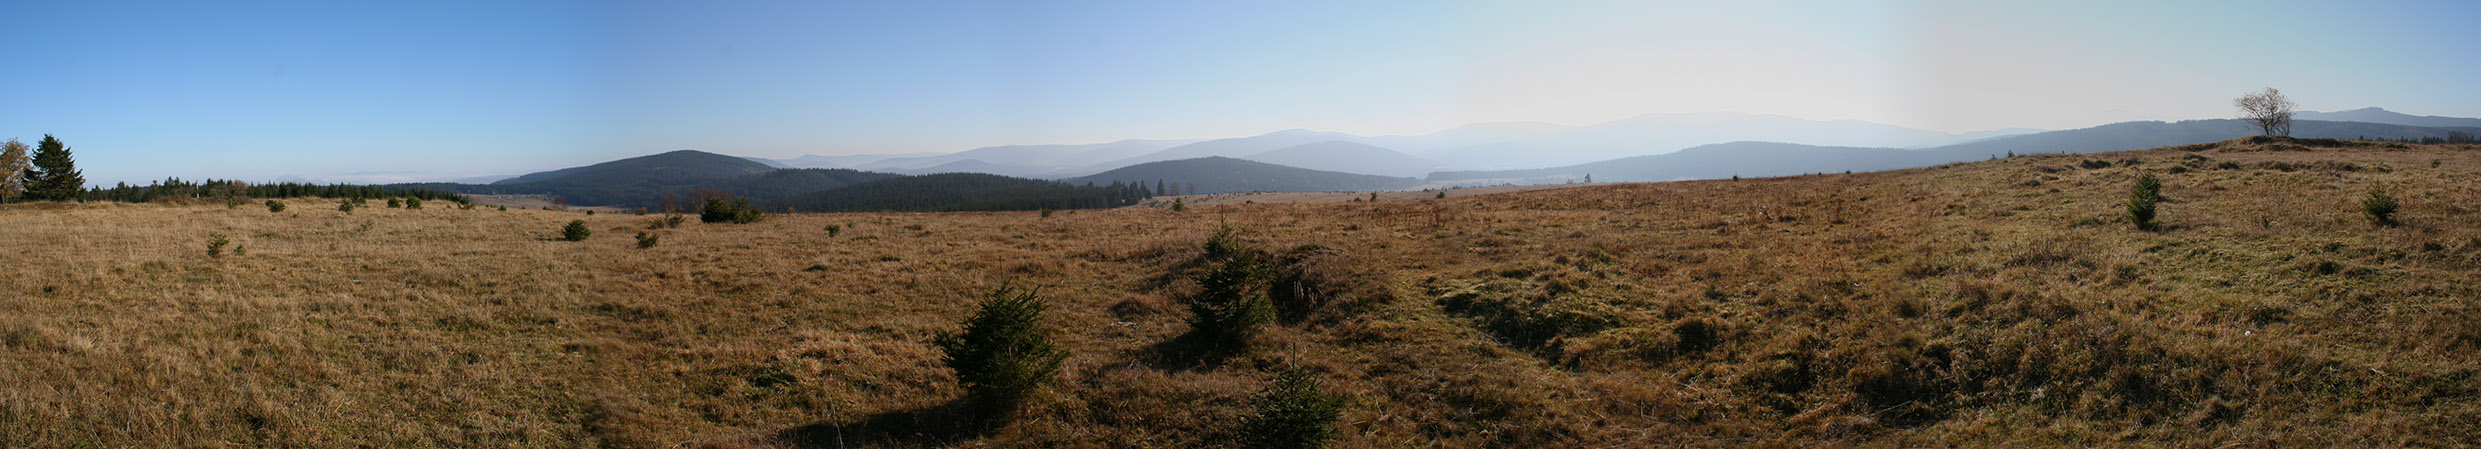 Rozhled z kopce "Hadí vrch", mezi šumavskou vesničkou Keply a zaniklým Zhůřím. Za horizontem údolí Křemelné, dále hřebeny české a především německé části Šumavy.
